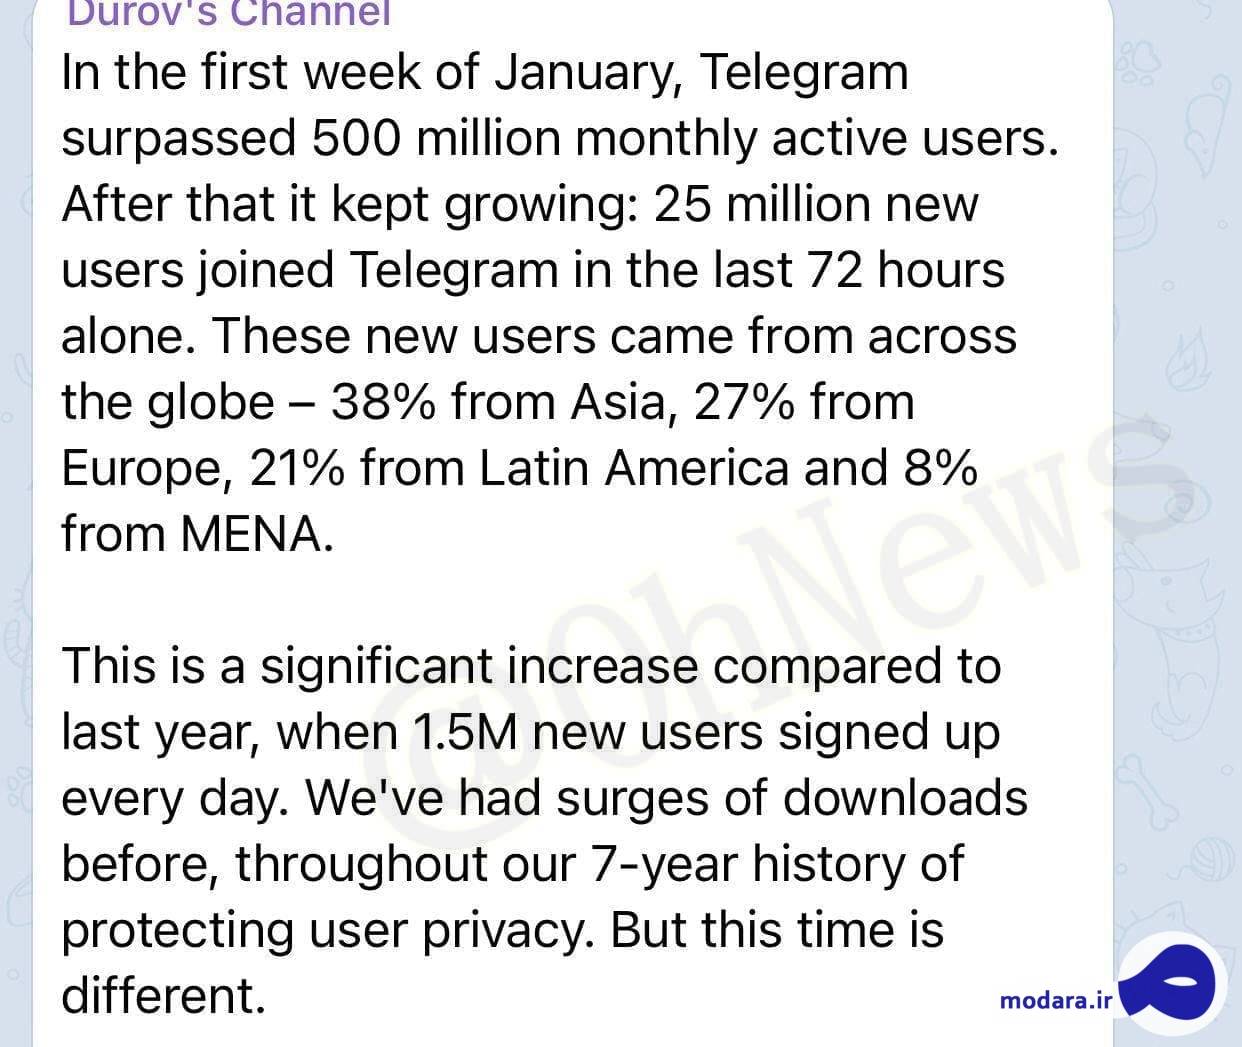 ۲۵ میلیون نفر در ۷۲ ساعت گذشته وارد تلگرام شدند